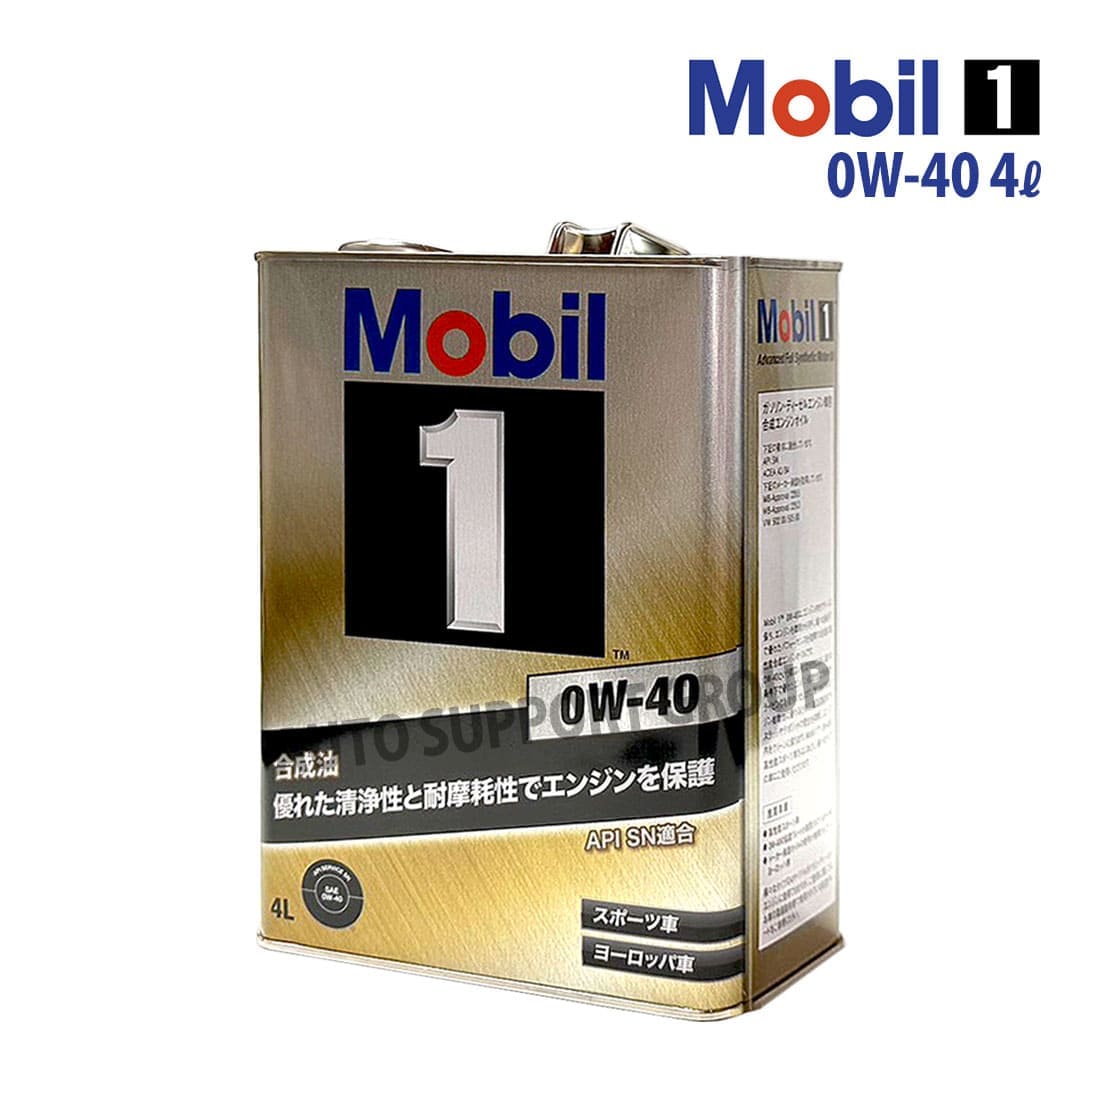 エンジンオイル 0W-40 SN モービル1 Mobil1 4L缶 (4リットル)  :ys-mob1010139-2304-10004:オートサポートグループ 通販 